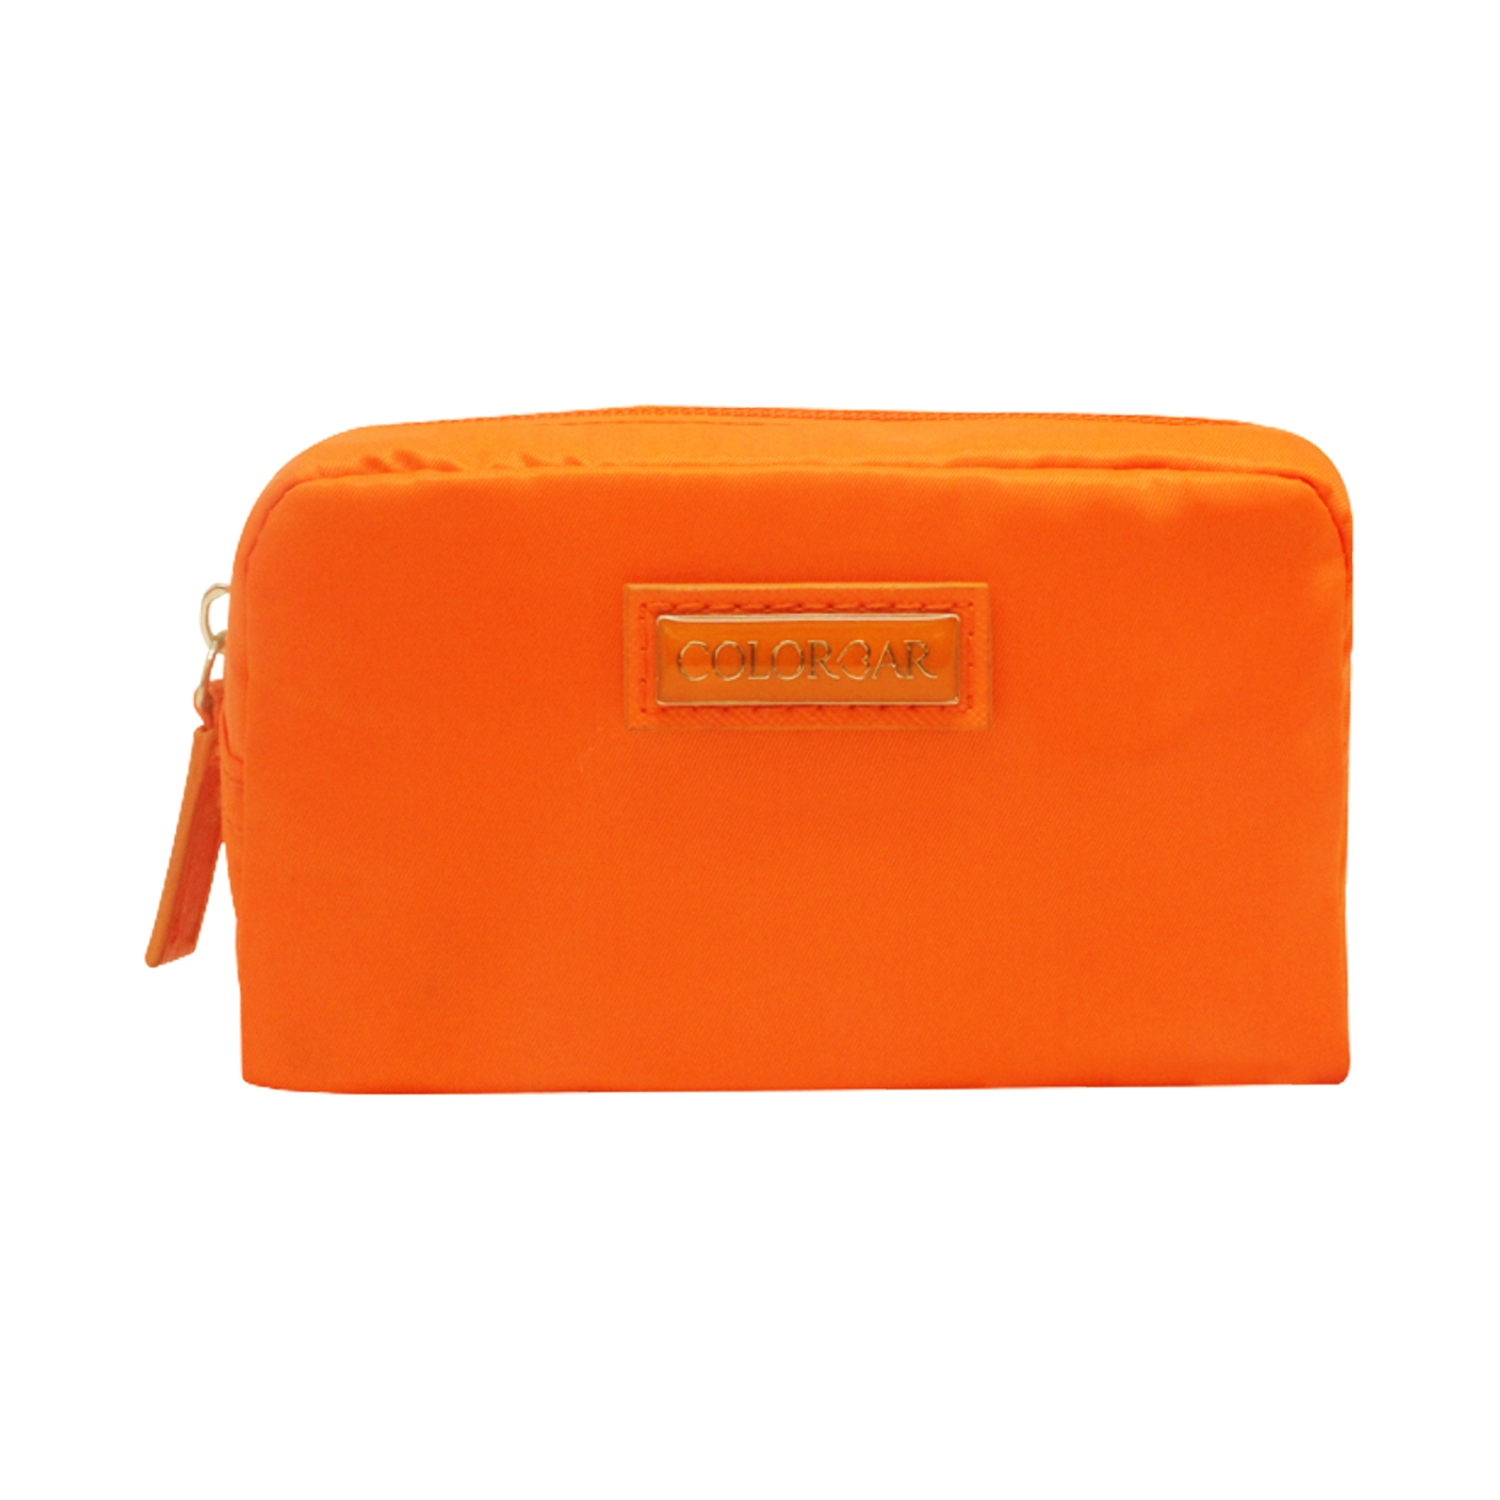 Colorbar | Colorbar Mini Pouch New - Orange